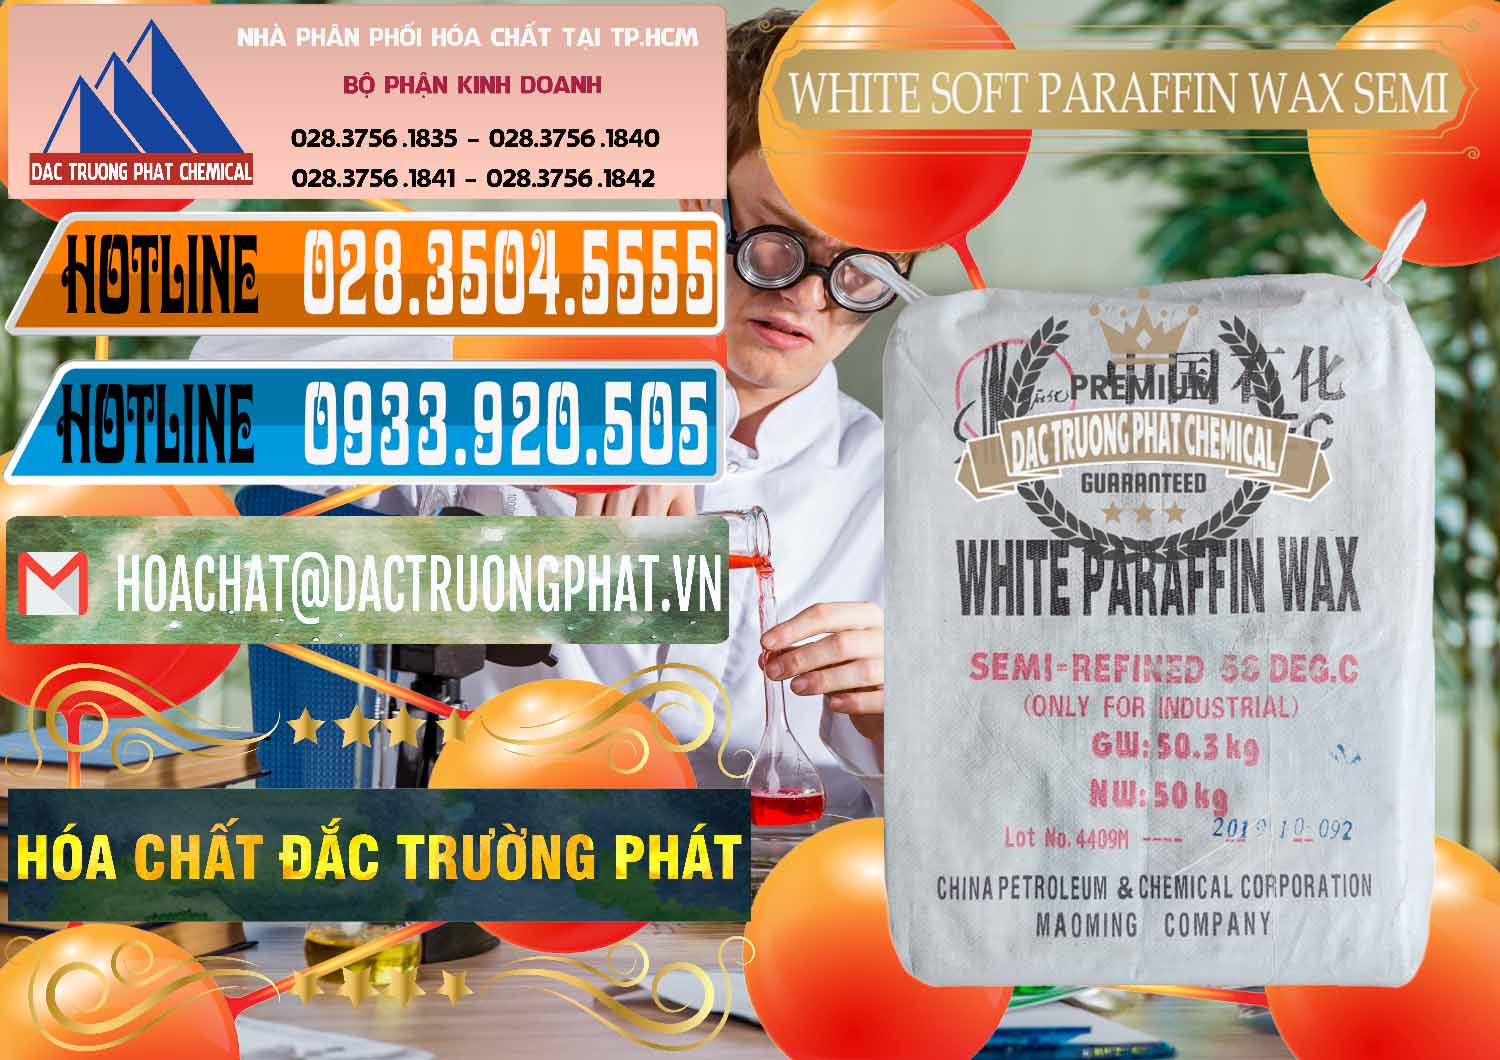 Nơi chuyên bán - phân phối Sáp Paraffin Wax Sinopec Trung Quốc China - 0328 - Chuyên nhập khẩu & cung cấp hóa chất tại TP.HCM - stmp.net